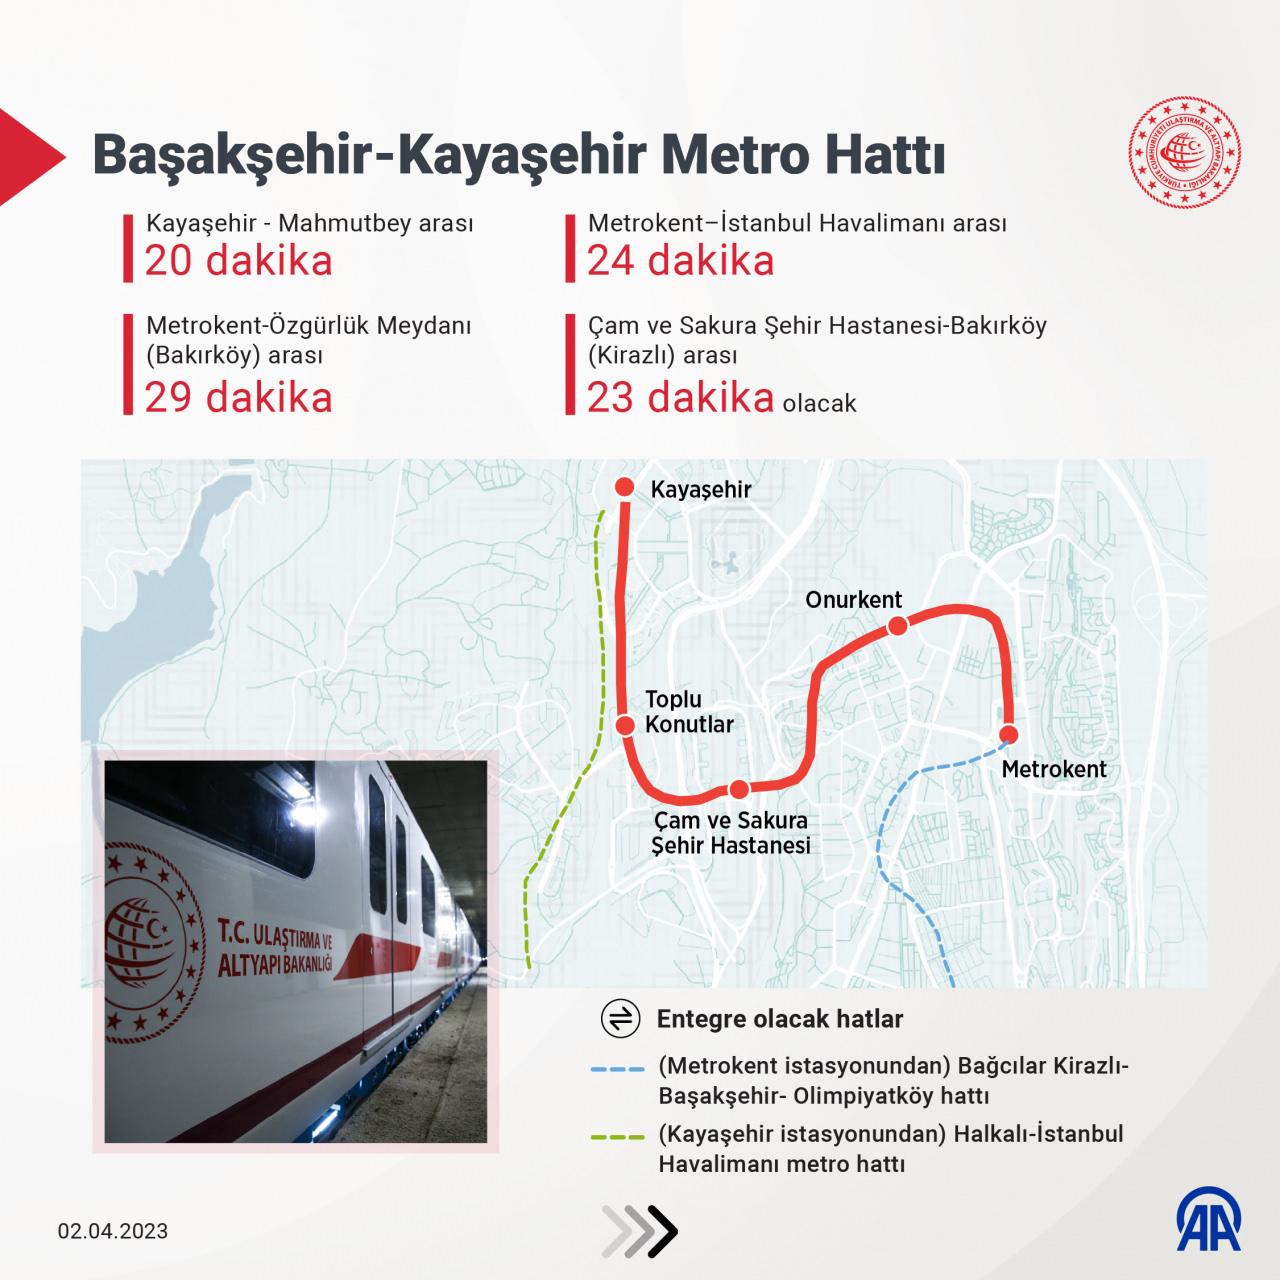 Başakşehir-Kayaşehir Metro Hattı - İnfografik